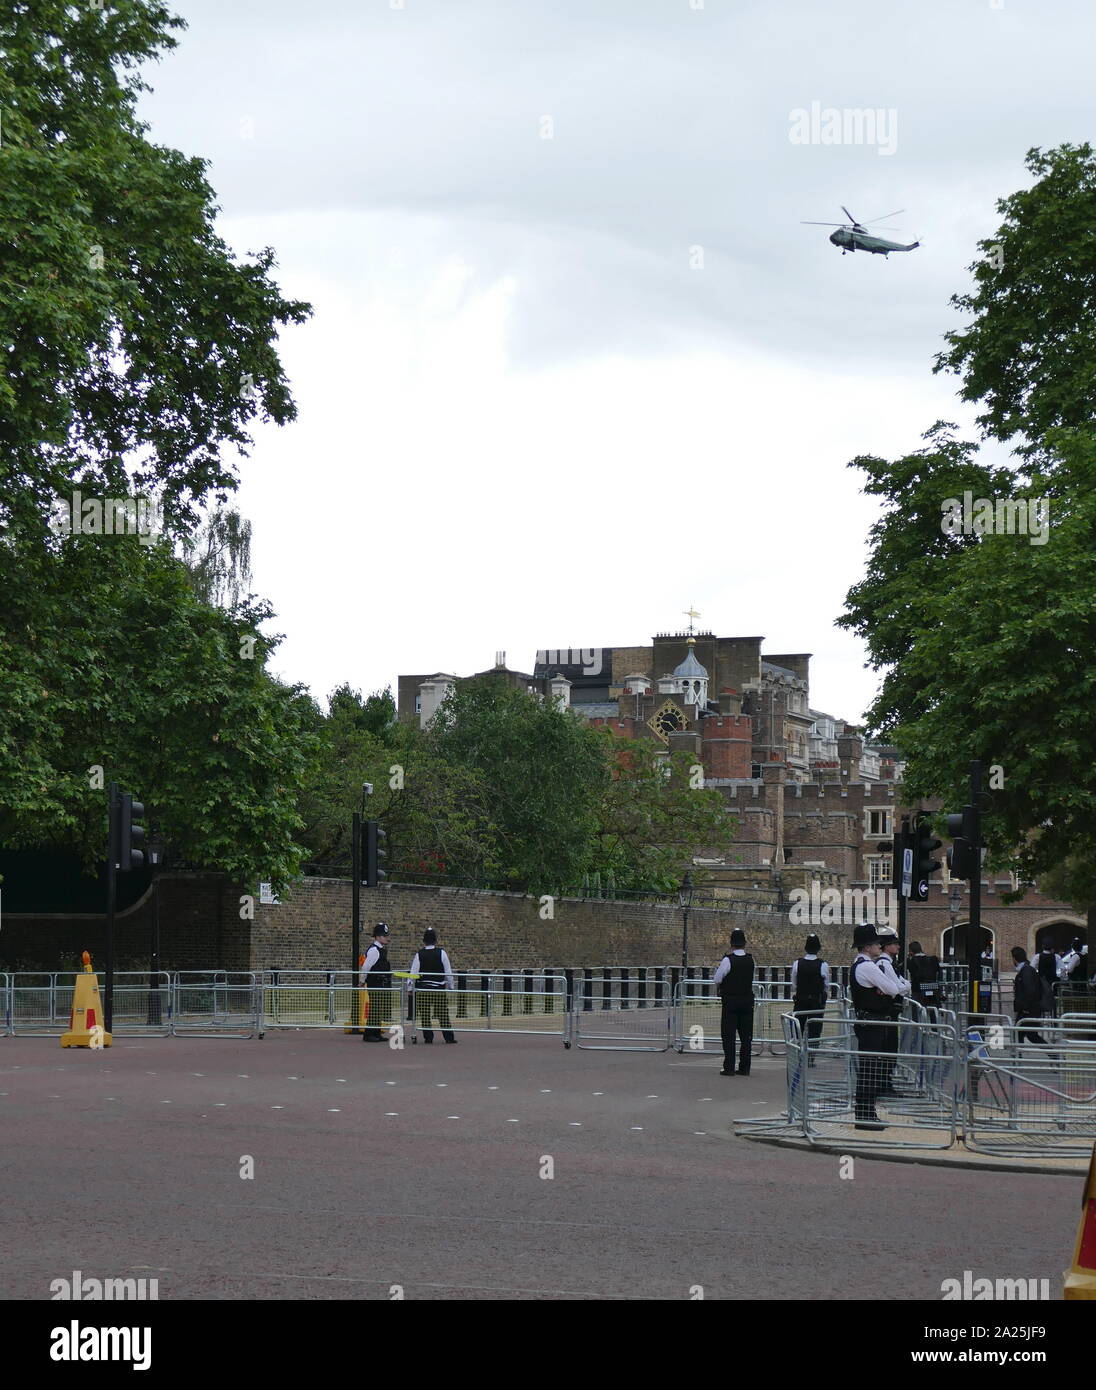 Marine ein Hubschrauber mit Präsident des Trump fliegen über auf der Mall auf dem Weg zum Buckingham Palace, London, die von der Polizei während der staatsbesuch gesichert für Präsident Donald Trump, Juni 2019 Stockfoto